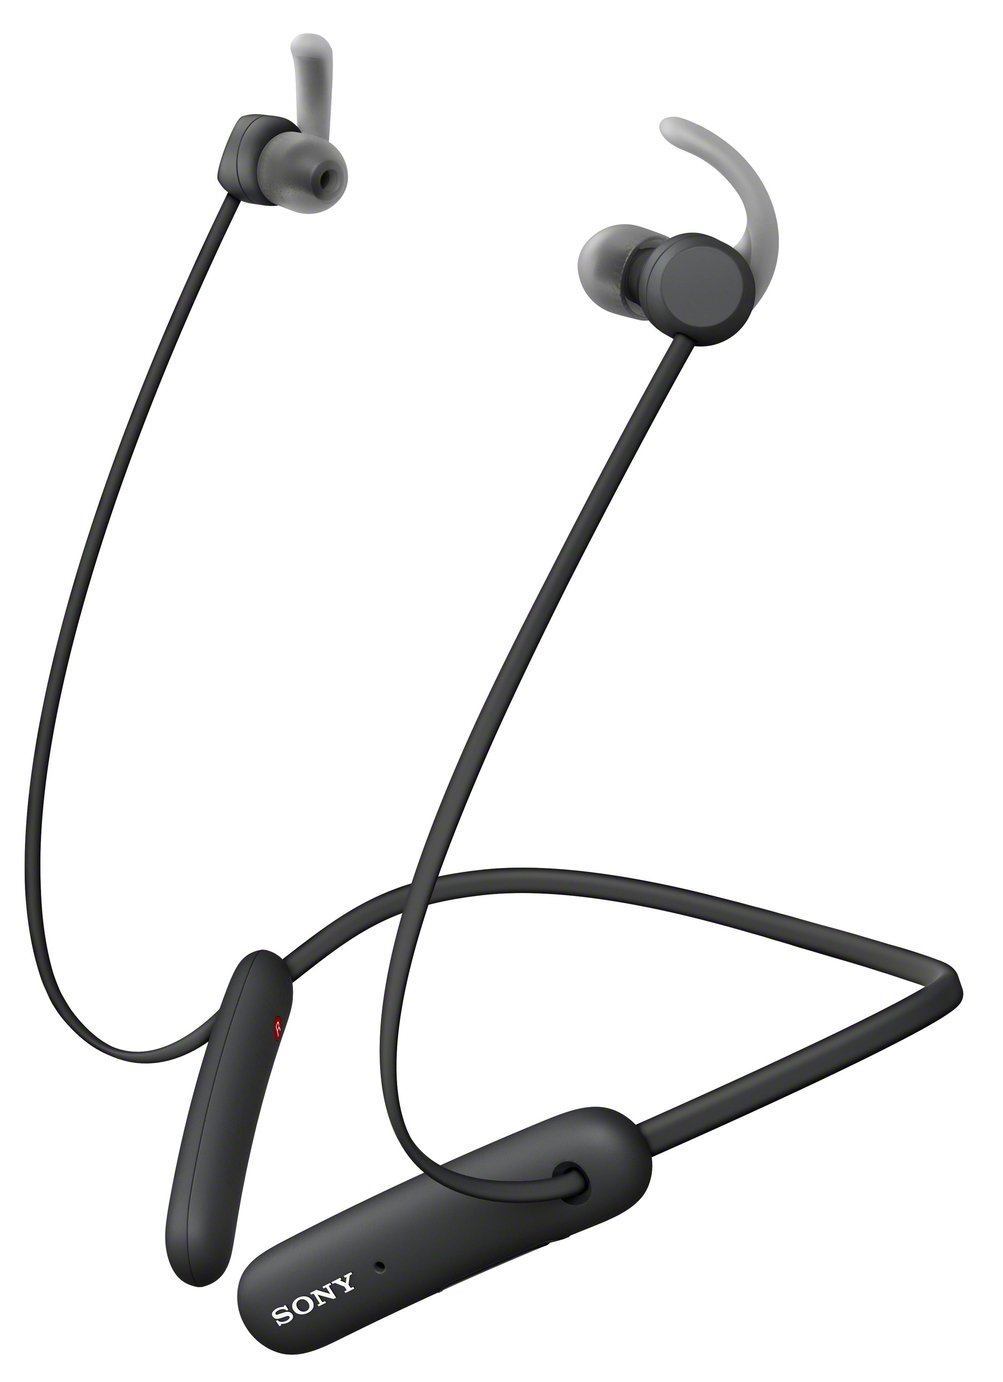 Sony WI-SP510 In-Ear Wireless Headphones Review